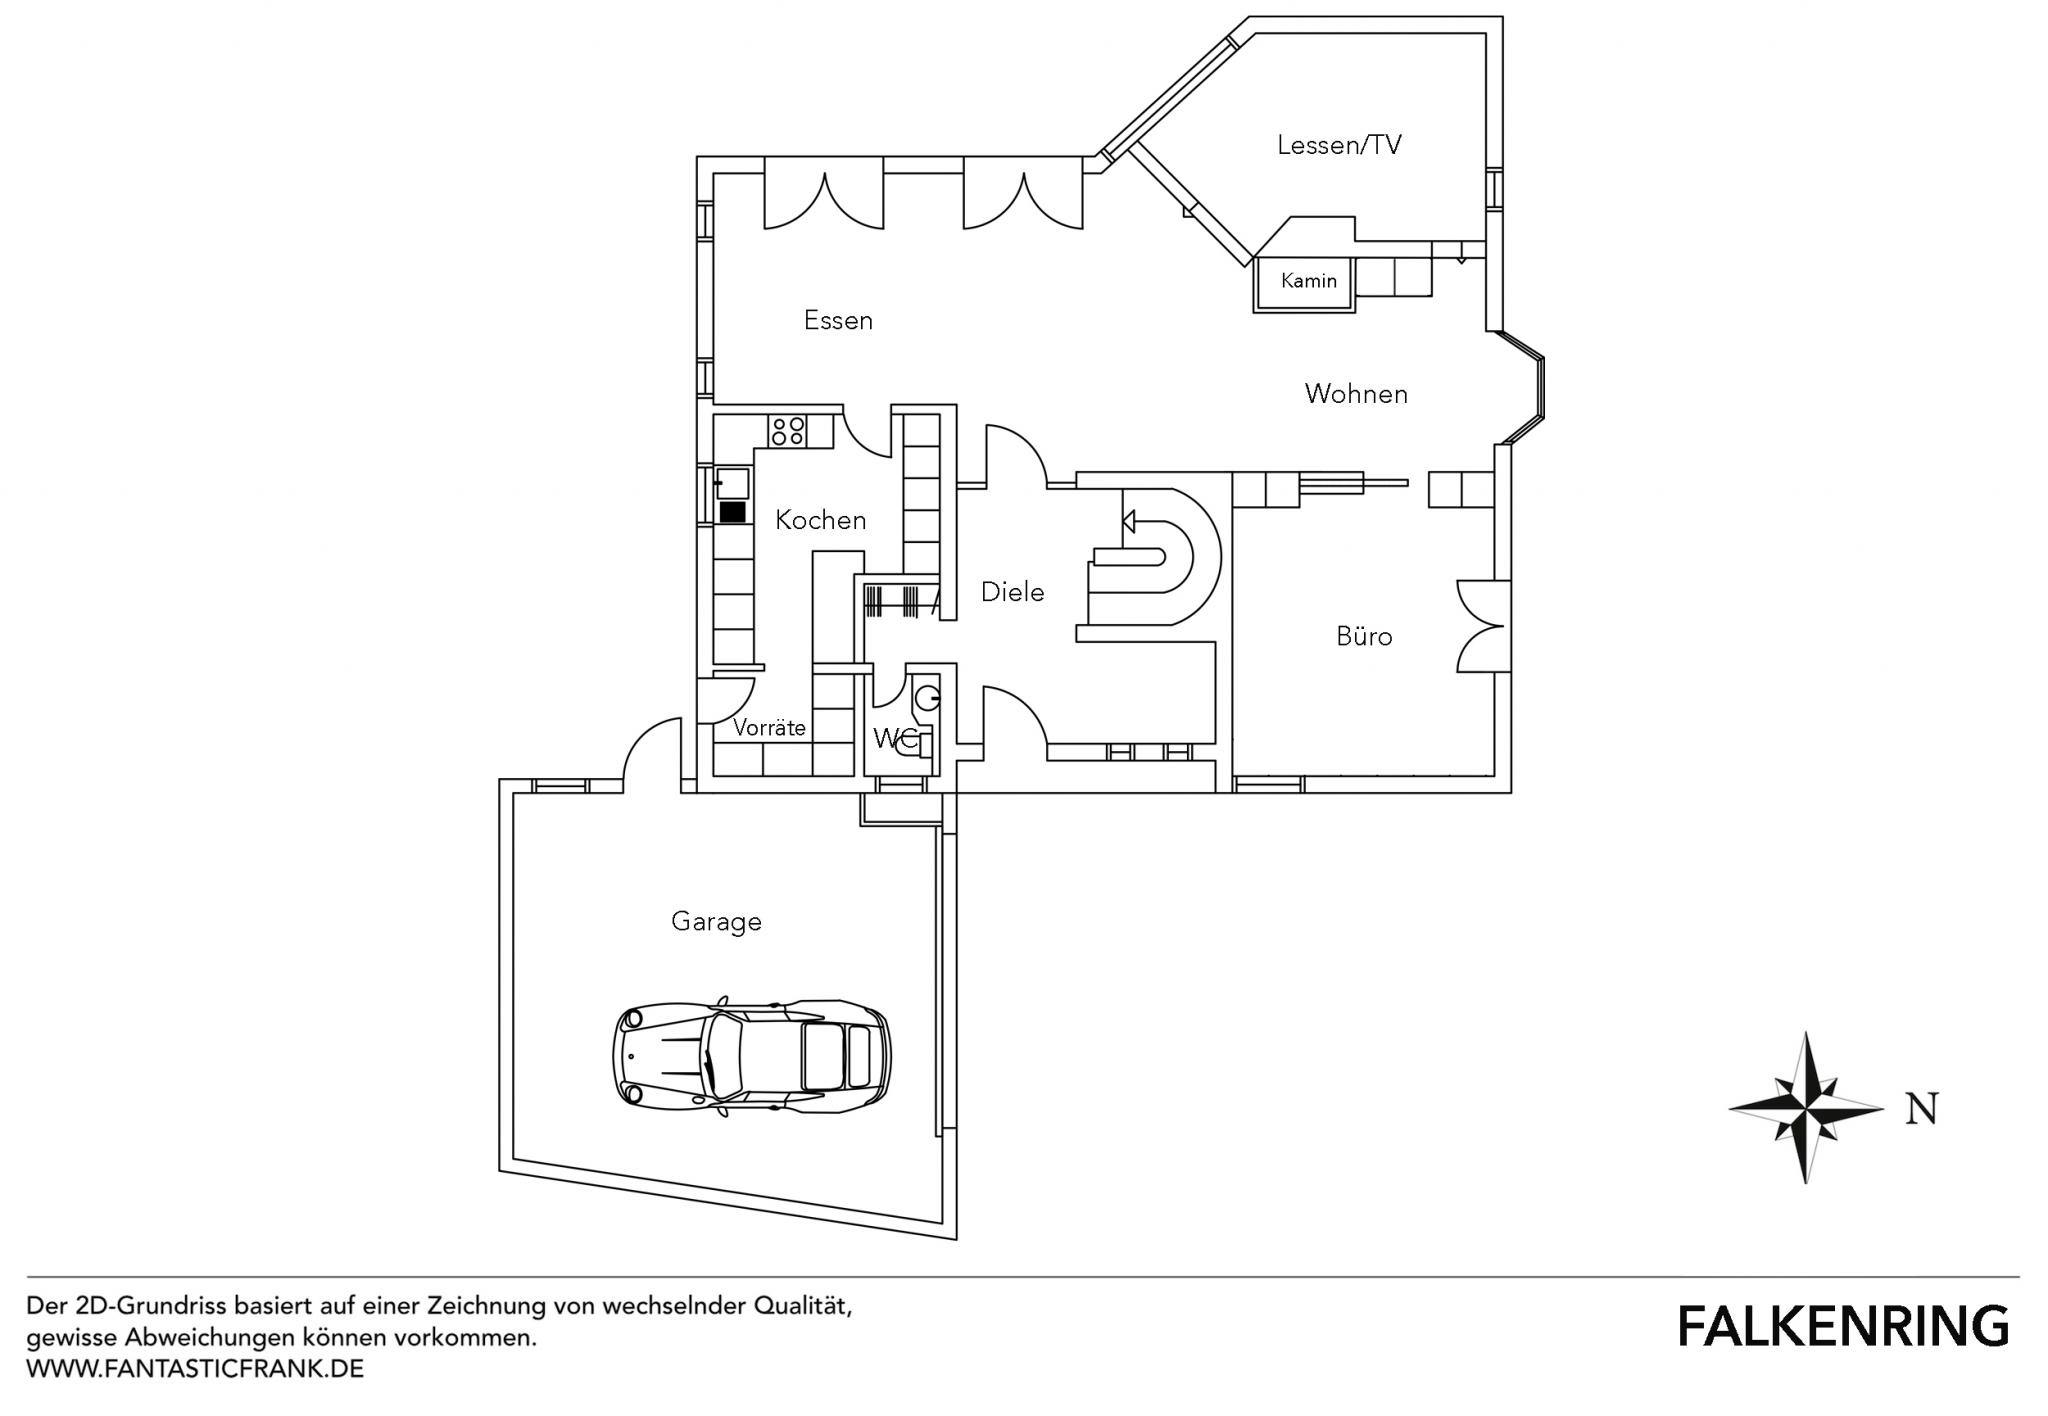 Floor plan 5